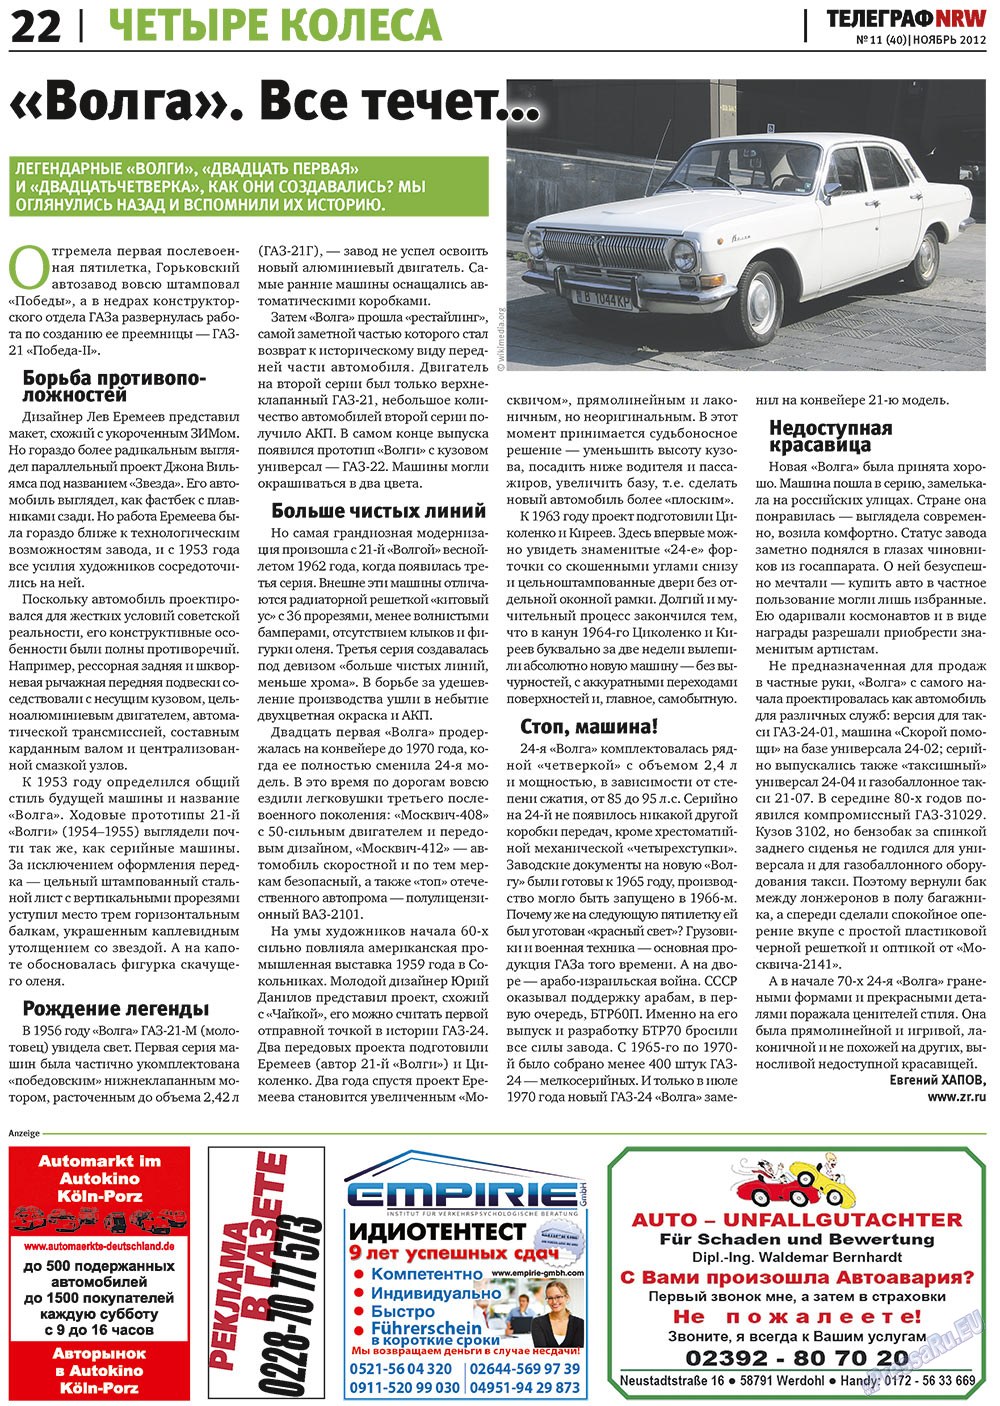 Телеграф NRW (газета). 2012 год, номер 11, стр. 22